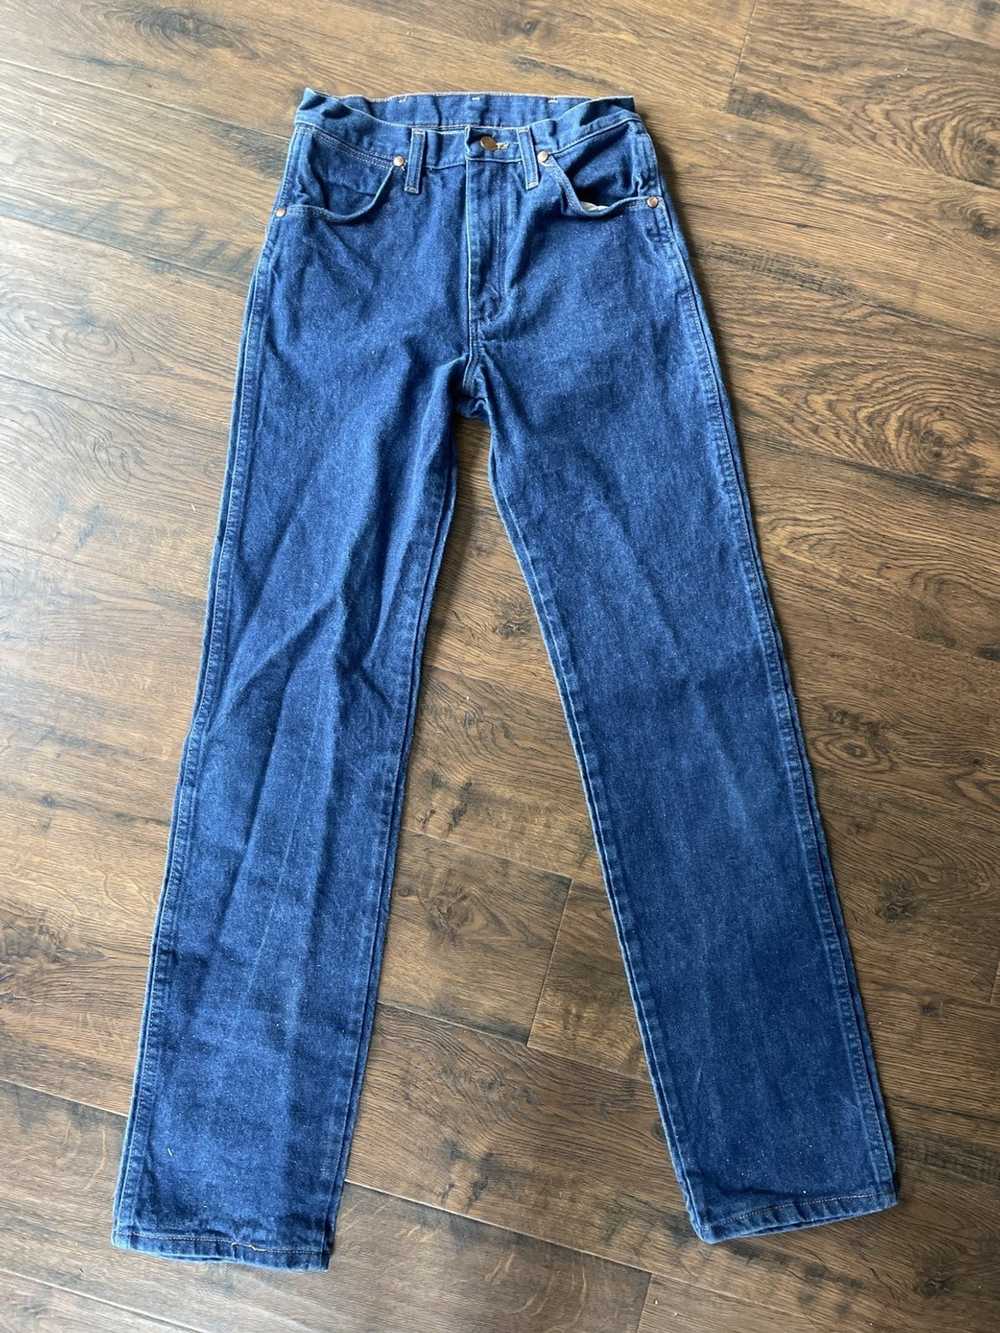 Wrangler wrangler jeans - image 1